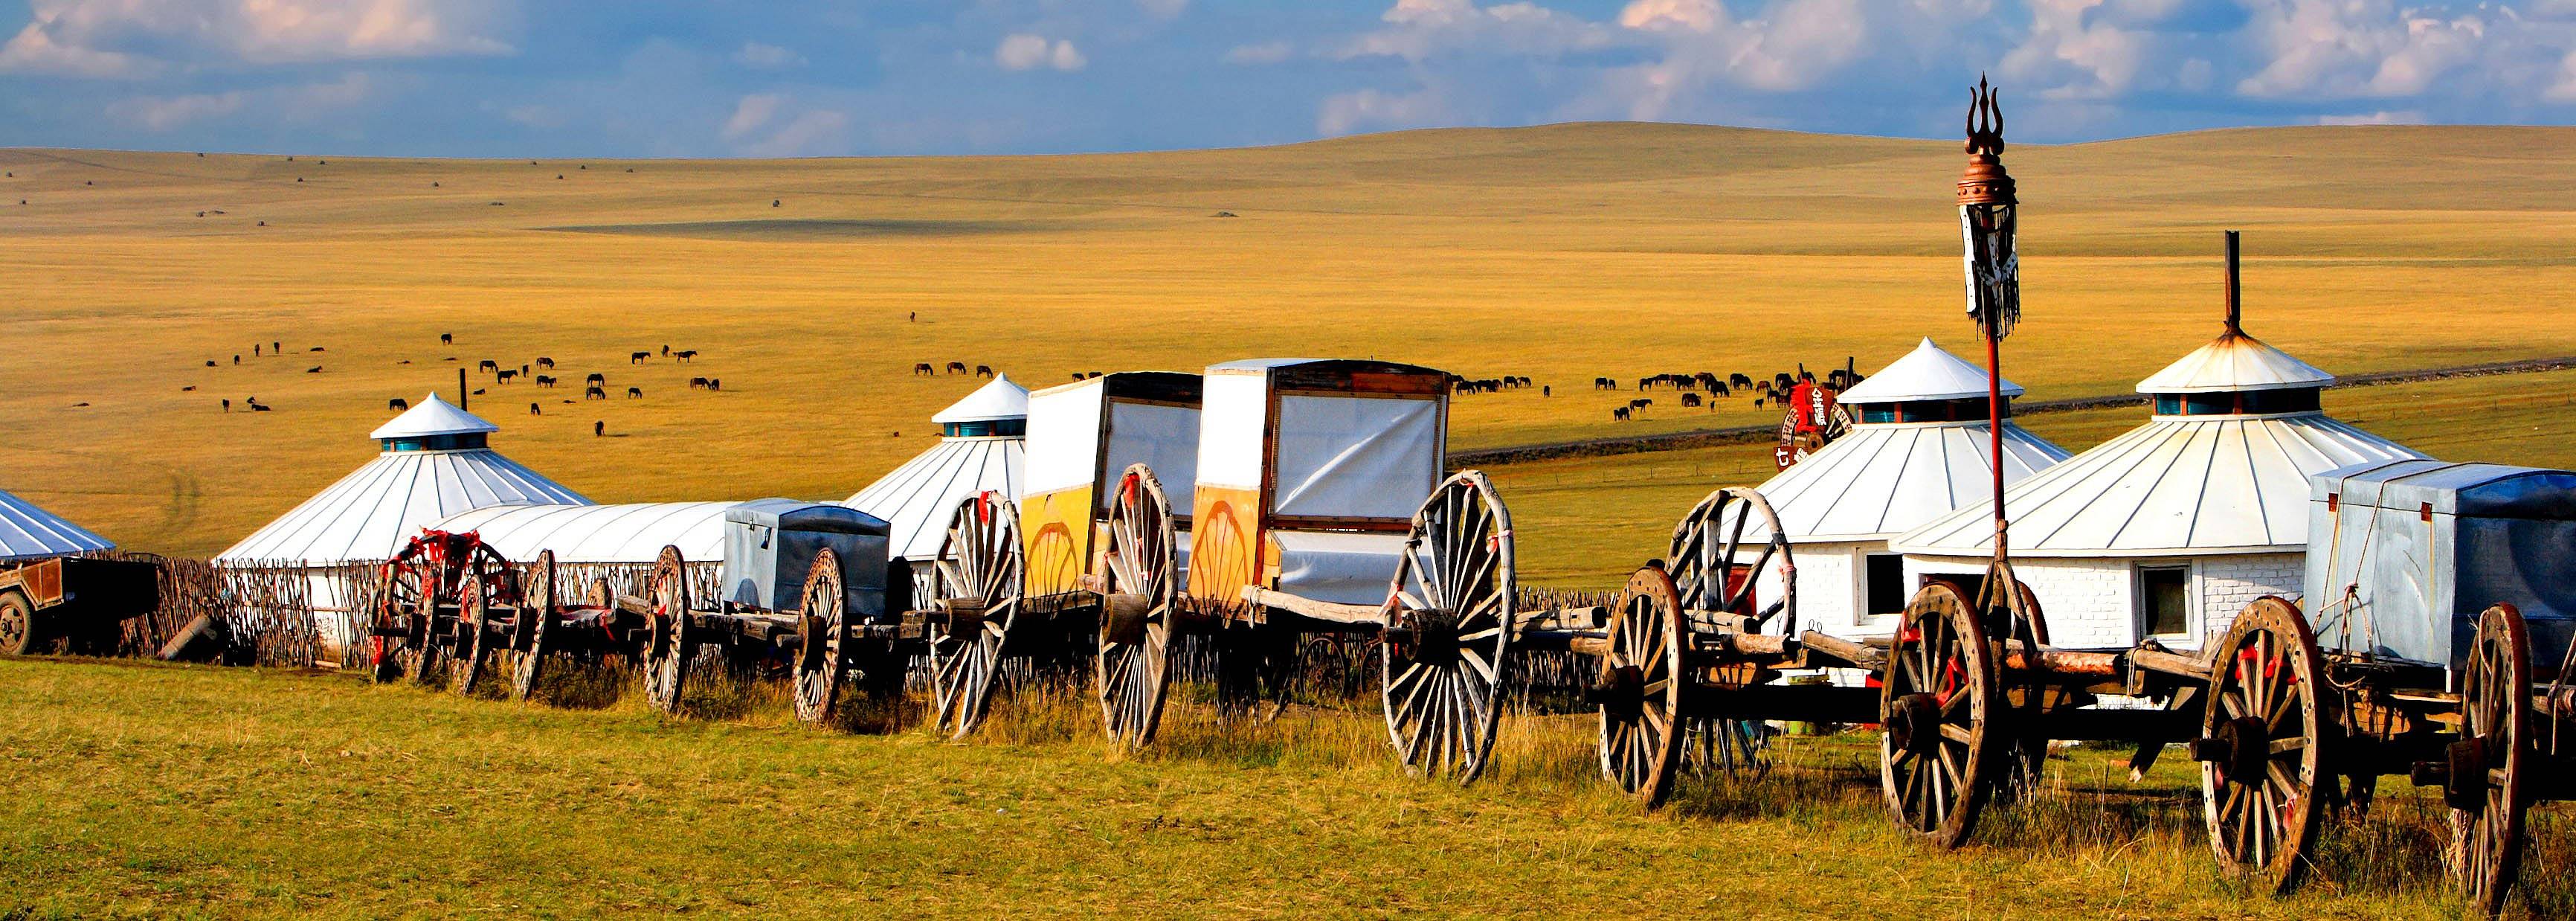 Crea tu viaje a Mongolia en invierno 100% a medida